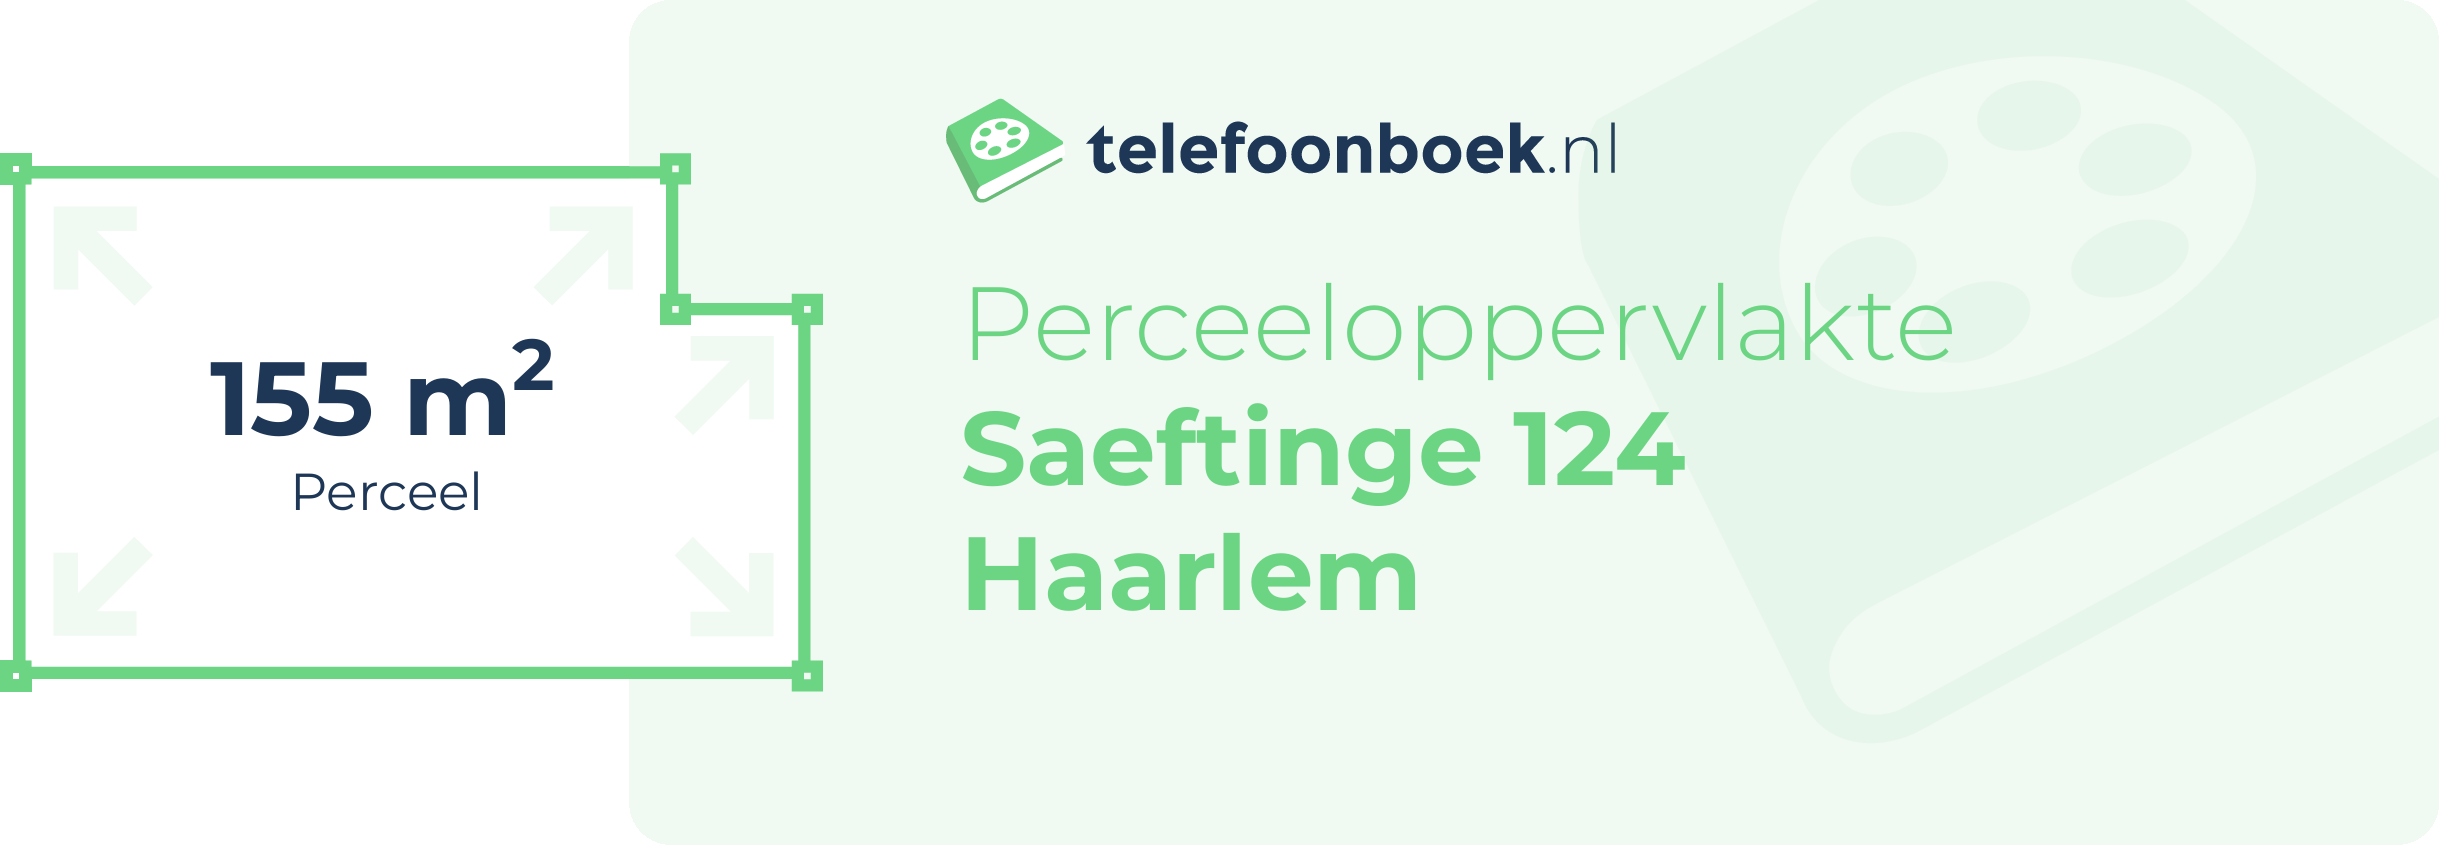 Perceeloppervlakte Saeftinge 124 Haarlem